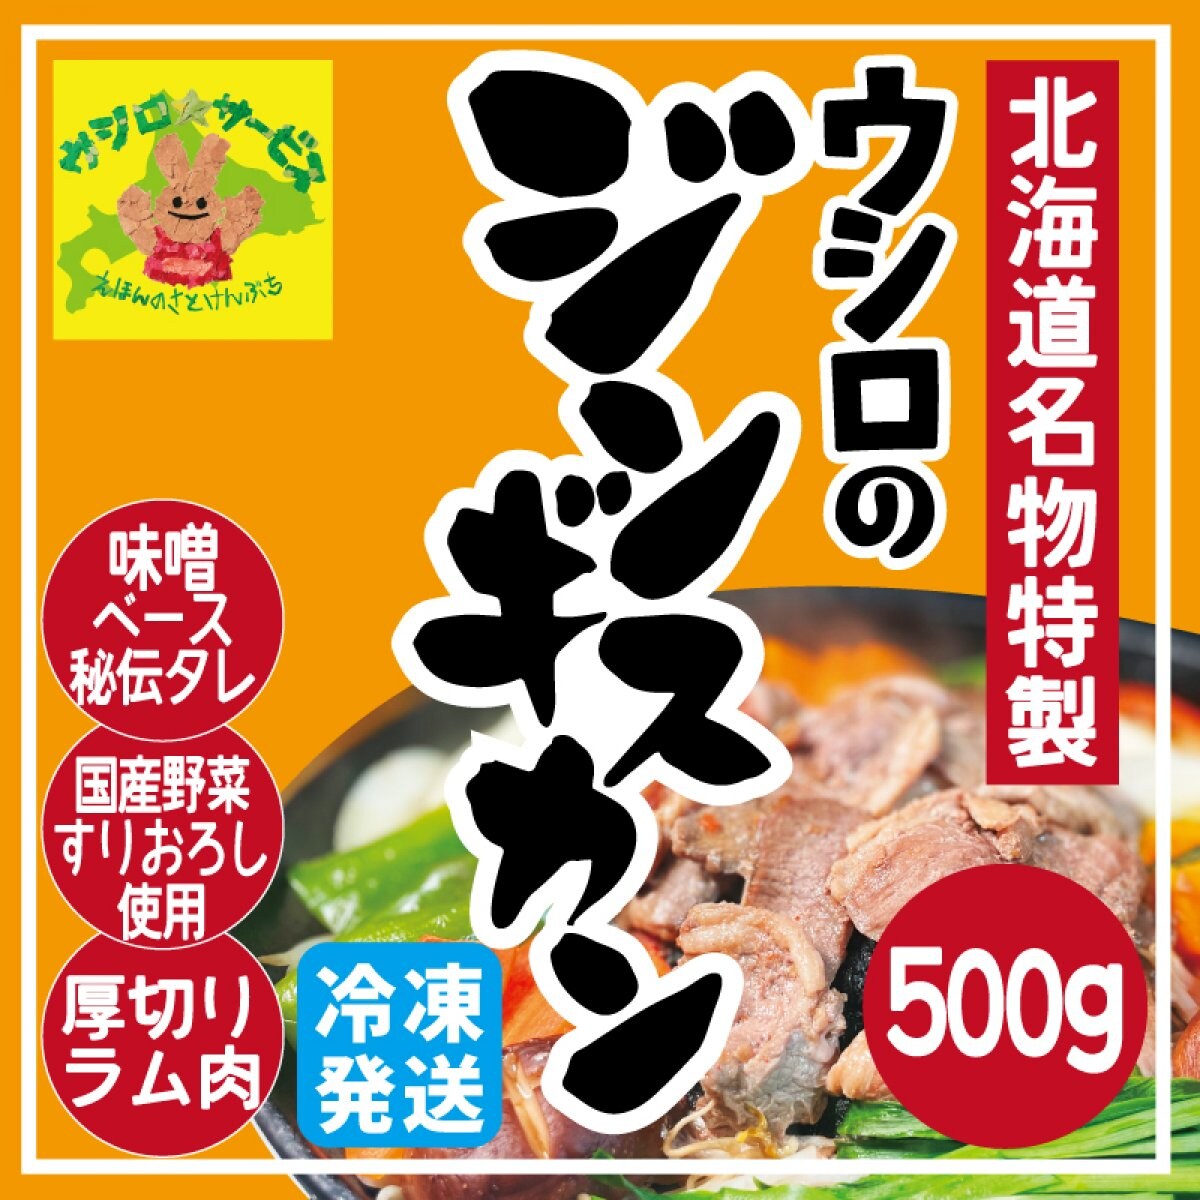 【特製】ウシロのジンギスカン 500g (冷凍)